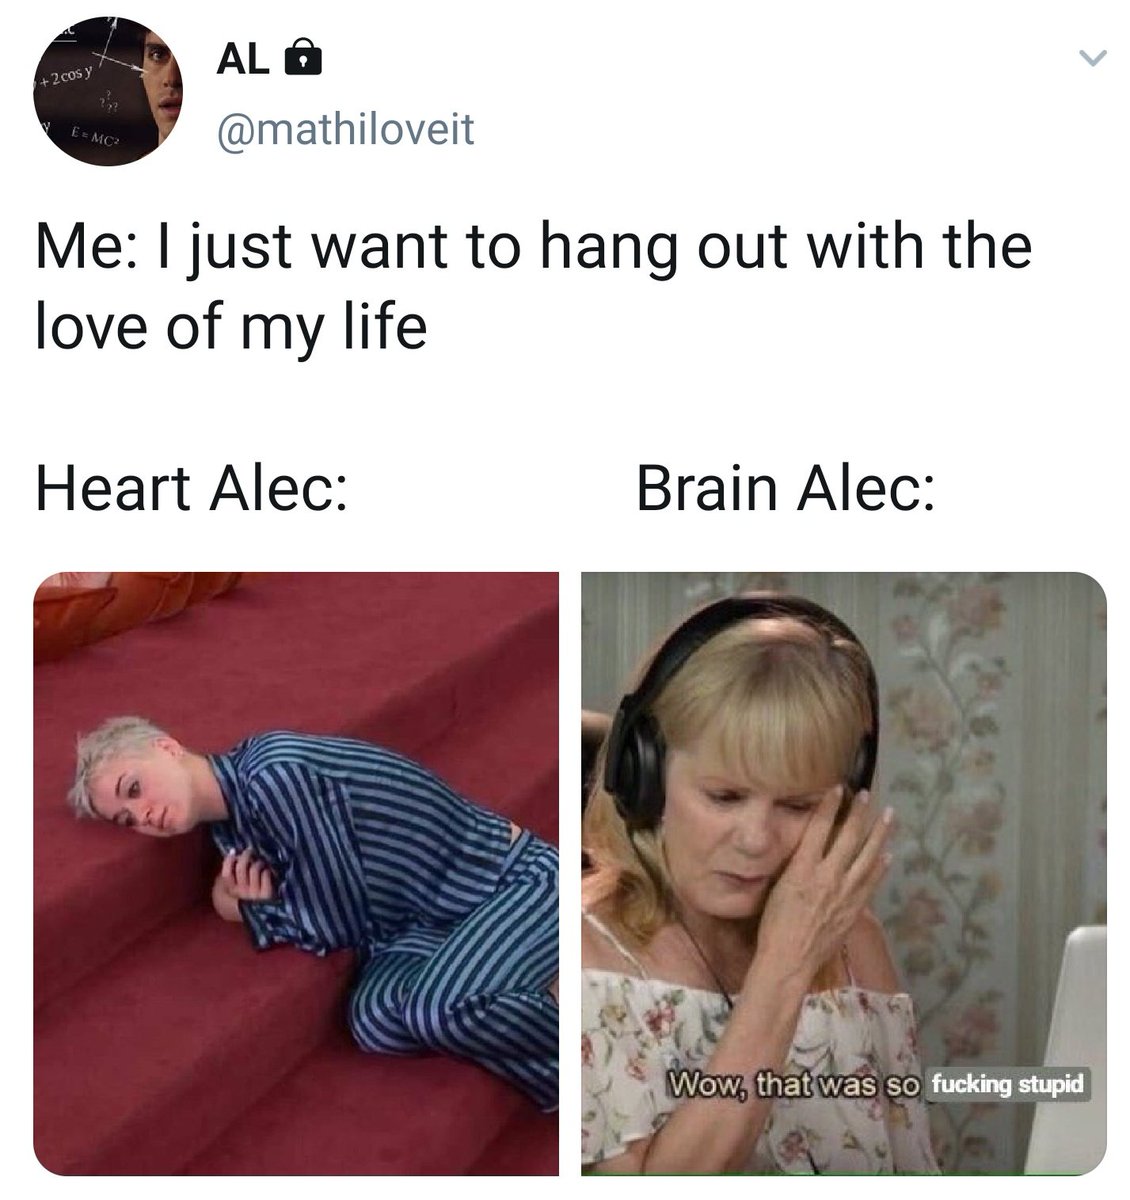 57. Brain Alec is a cyberbully